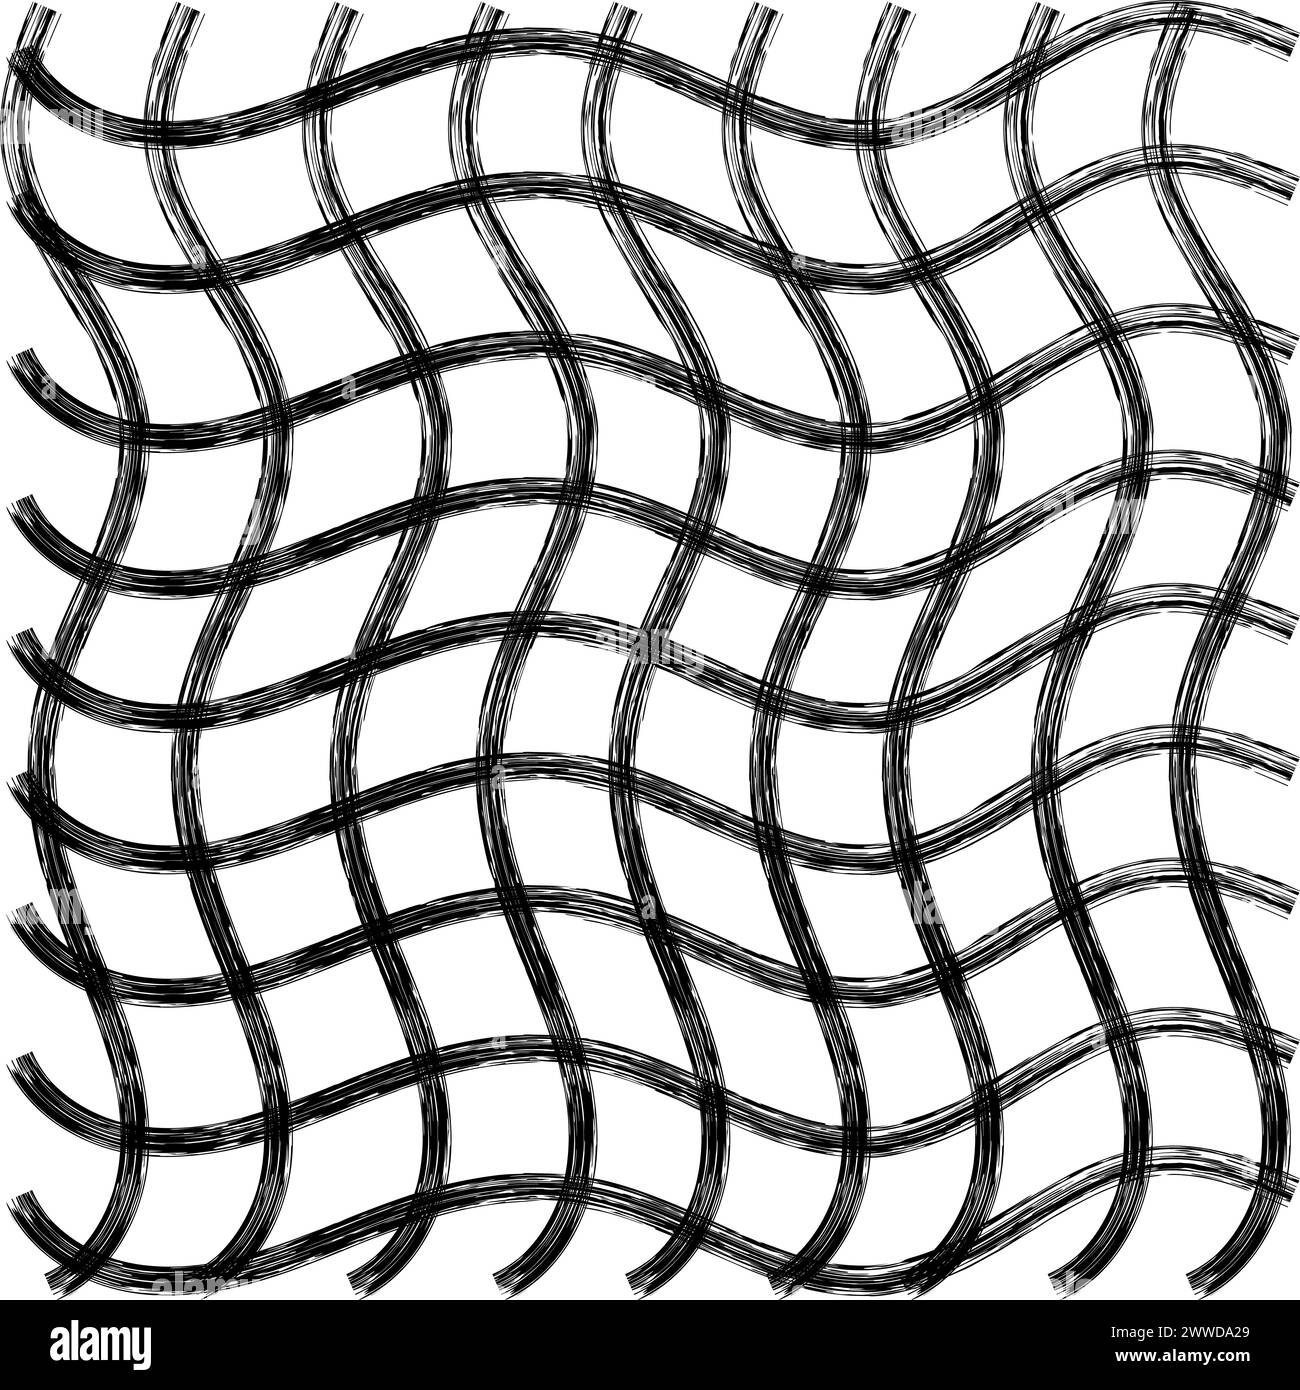 Vector dibujado a mano lindo patrón ondulado a cuadros. Doodle Plaid cepillo crayón textura simple. Cruzando las líneas de garabatos. Idea de patrón delicado lindo abstracto Ilustración del Vector